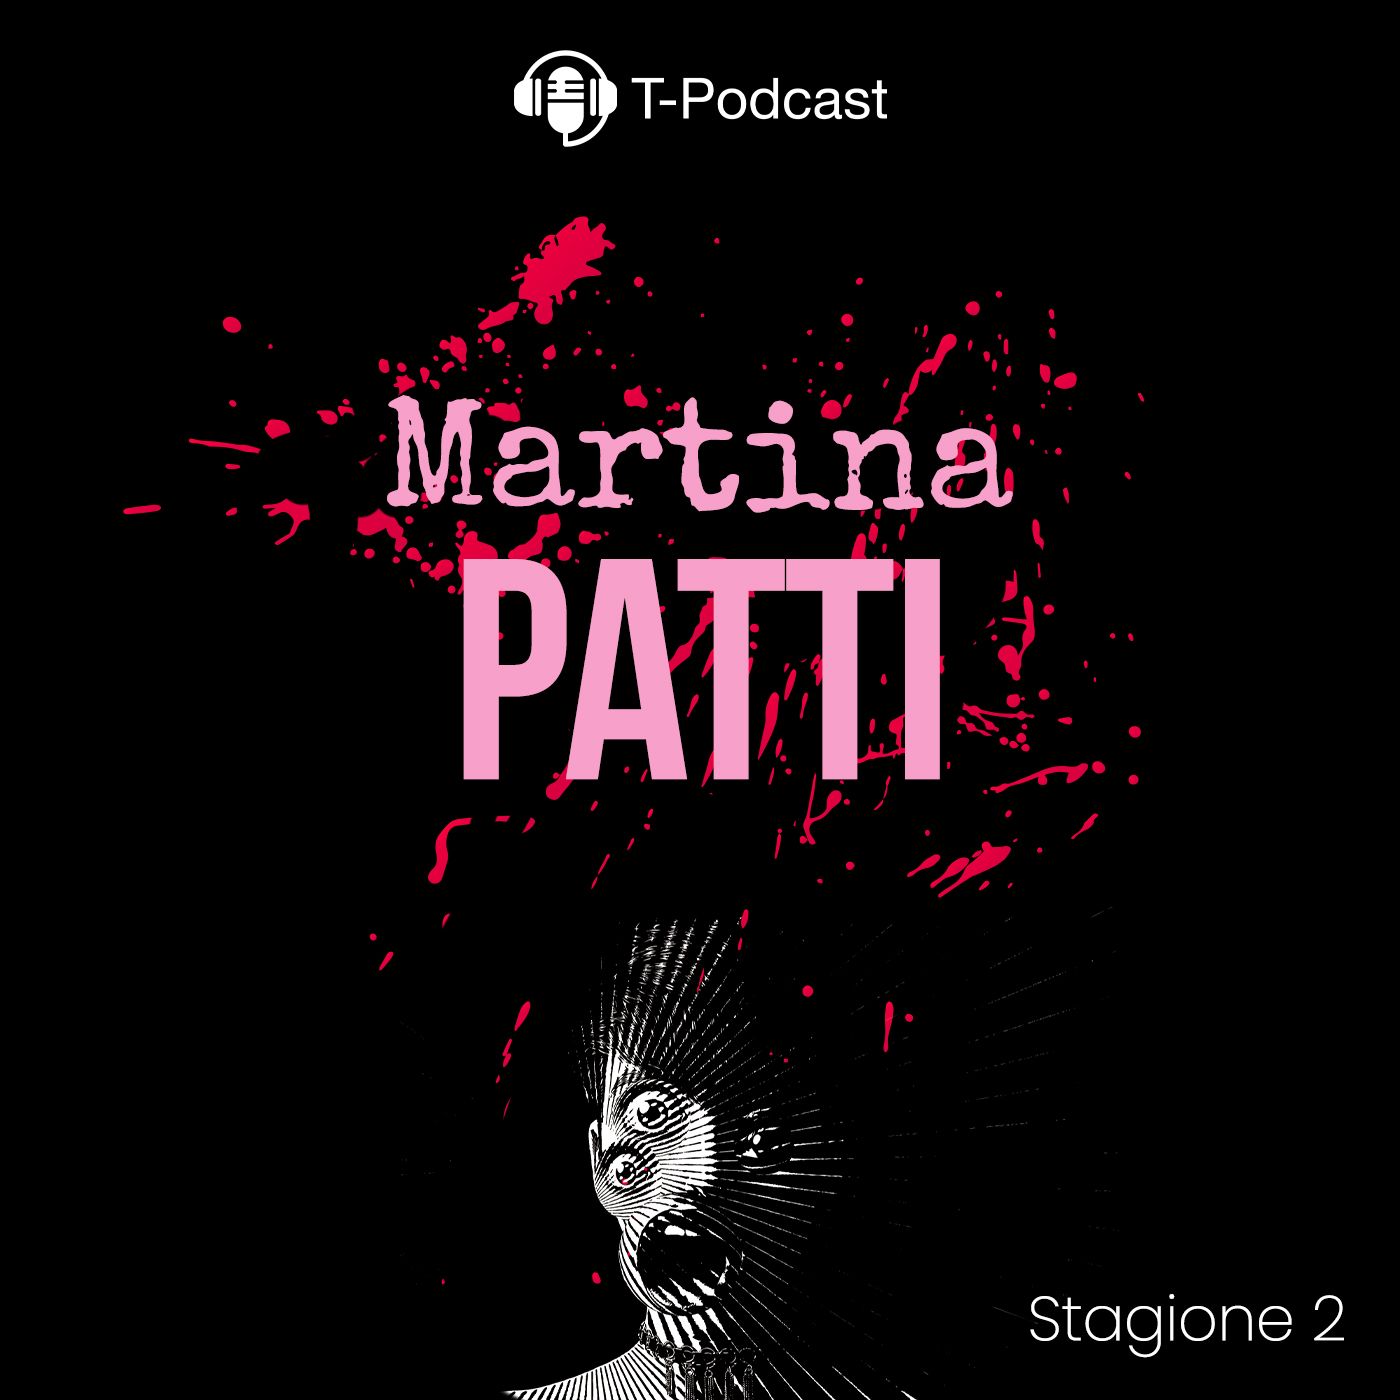 S2 E6 - Martina Patti